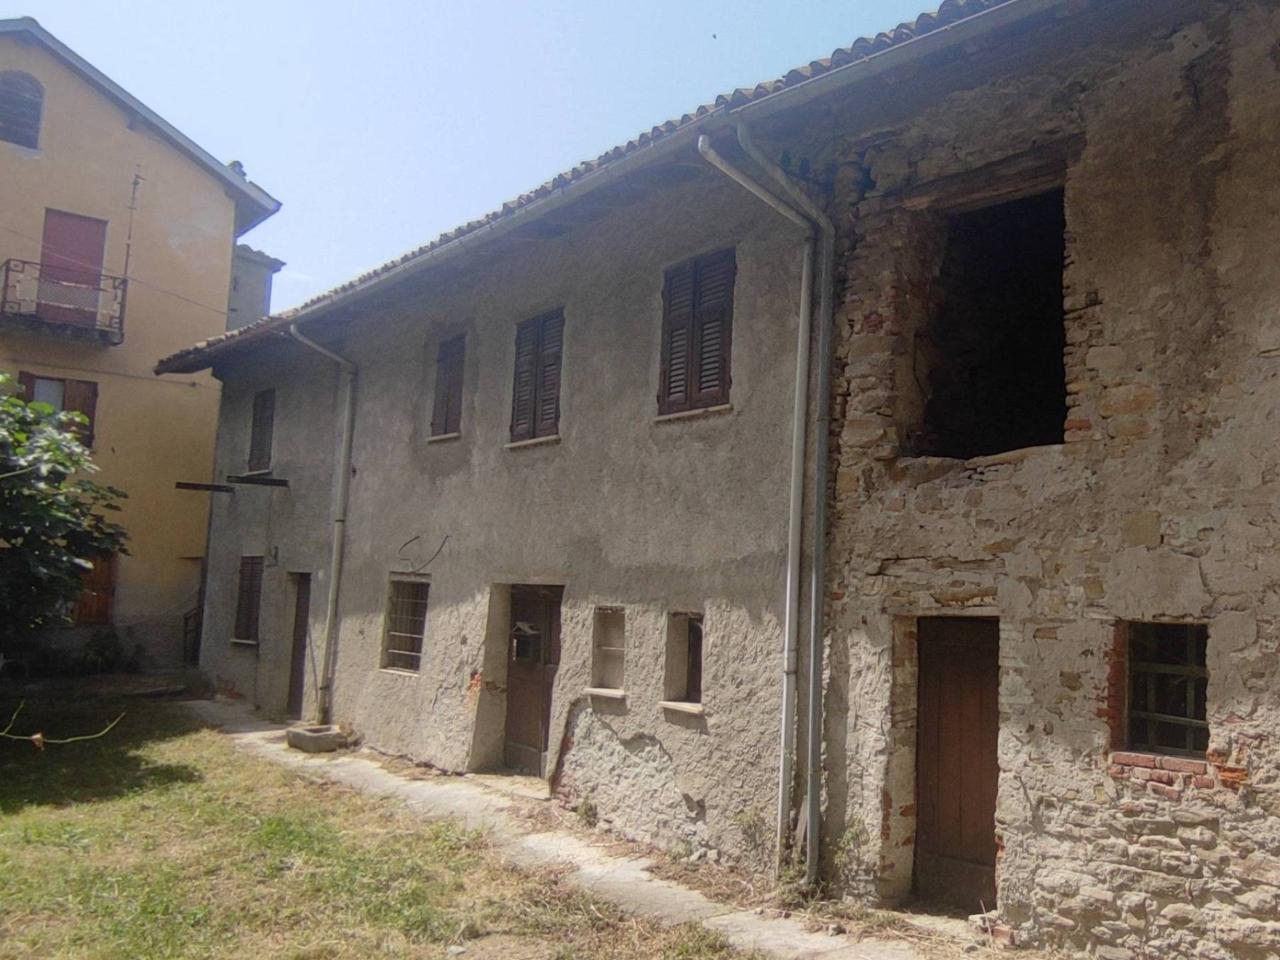 Villa in vendita a Tagliolo Monferrato